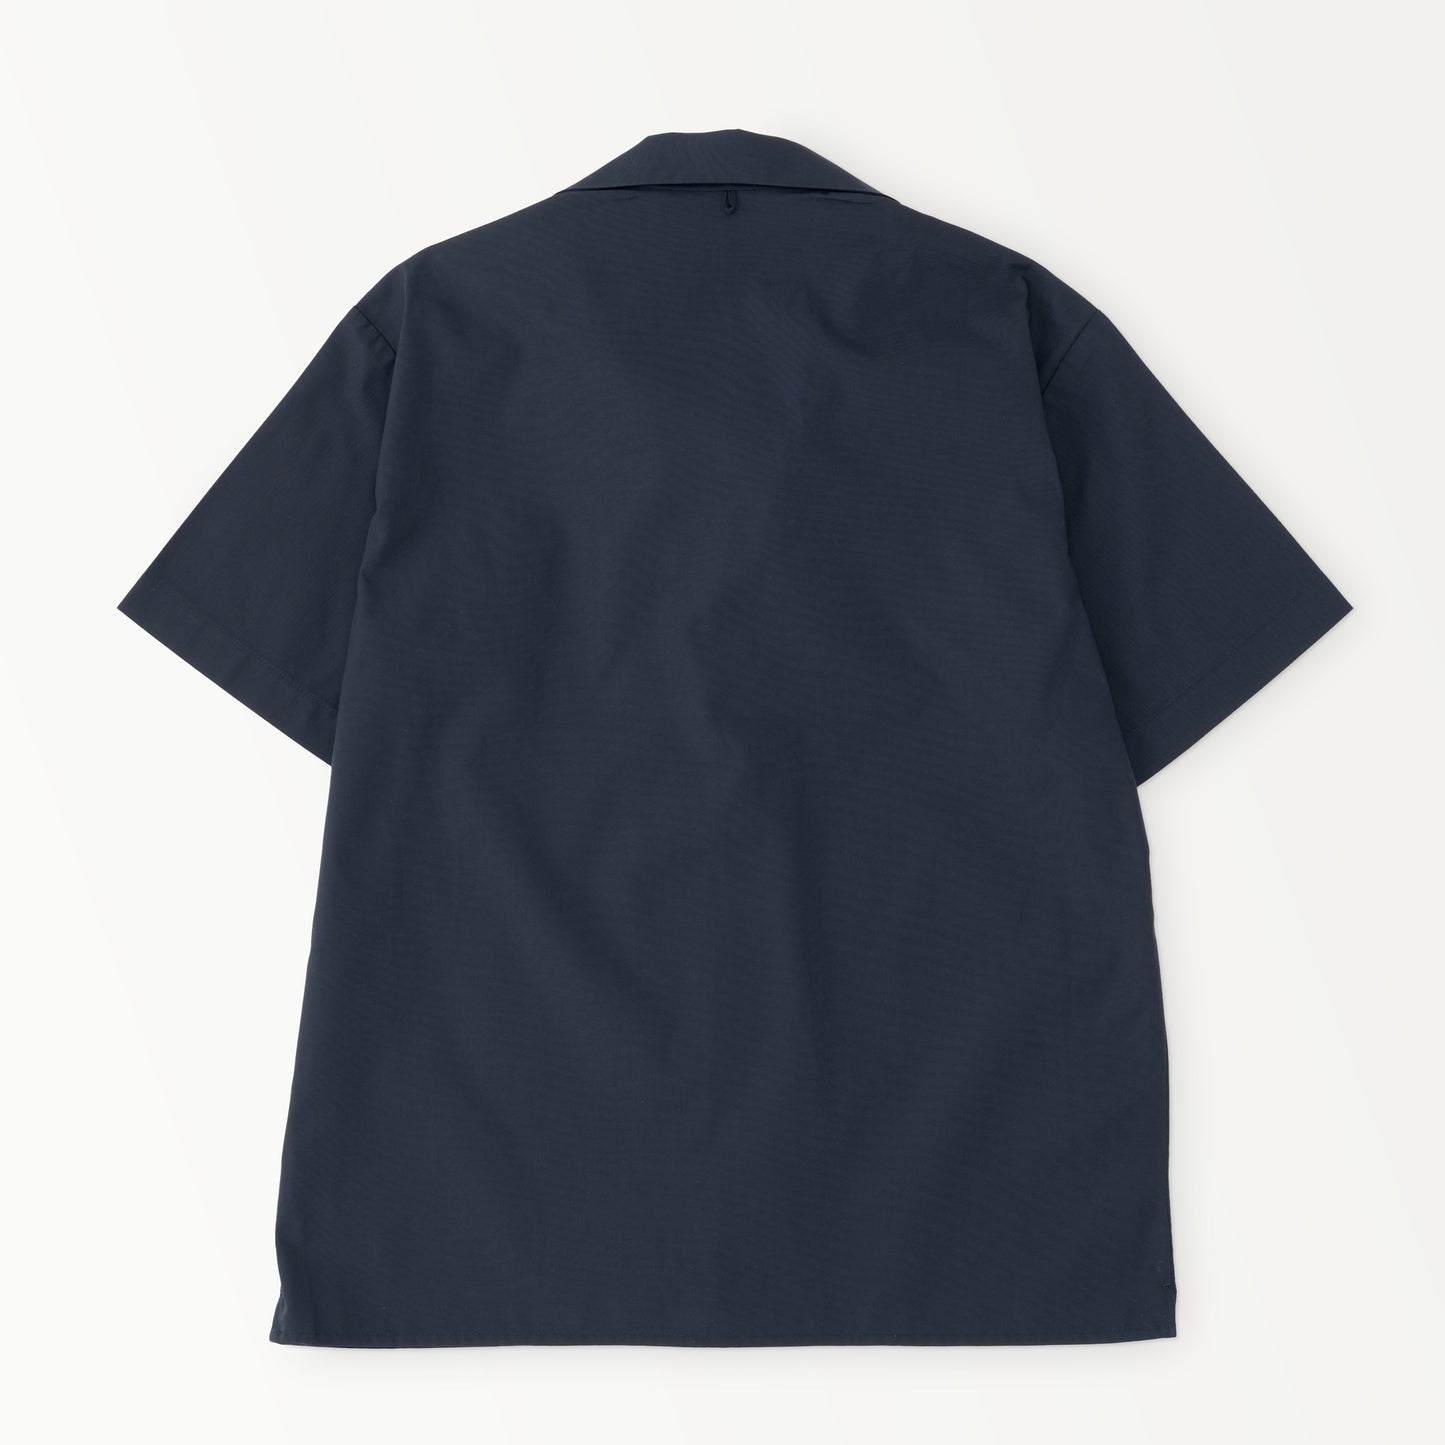 【限定生産】Classic Col. / Open collar shirt